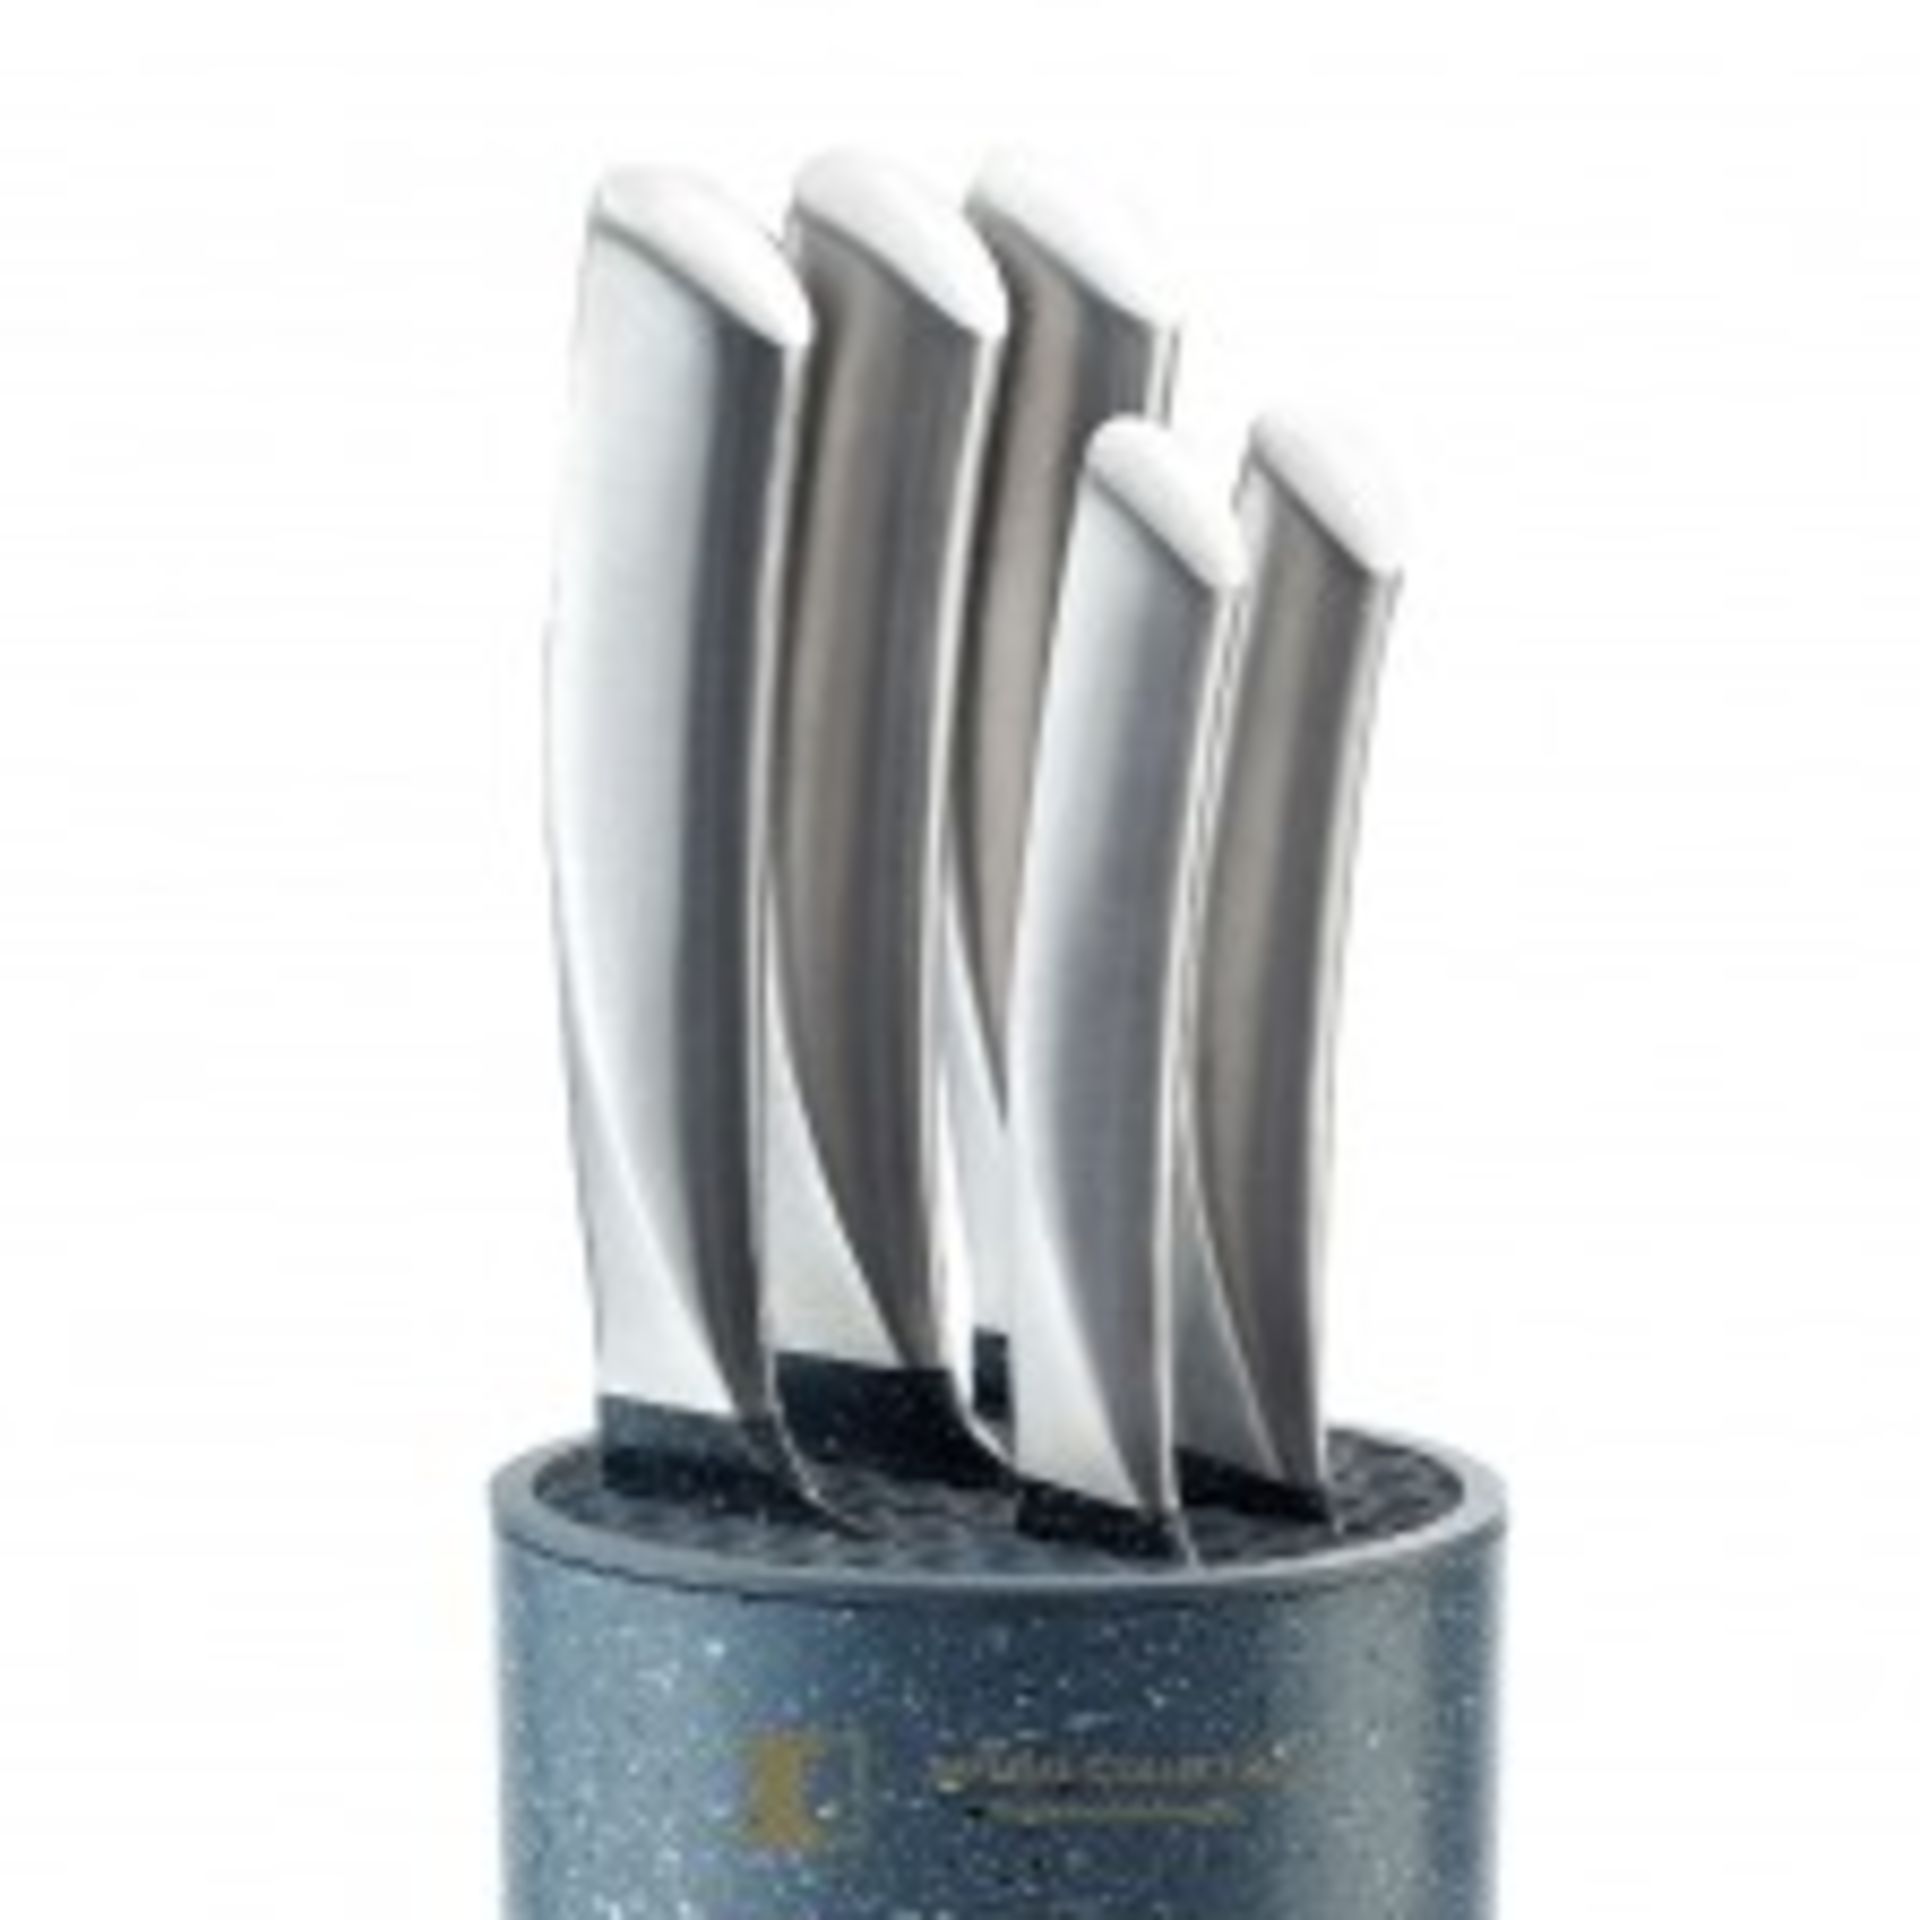 V Brand New Five Piece Metal Handled Knife Set In Utensil Holder Including 6" Carving Knife - 8" - Image 4 of 4